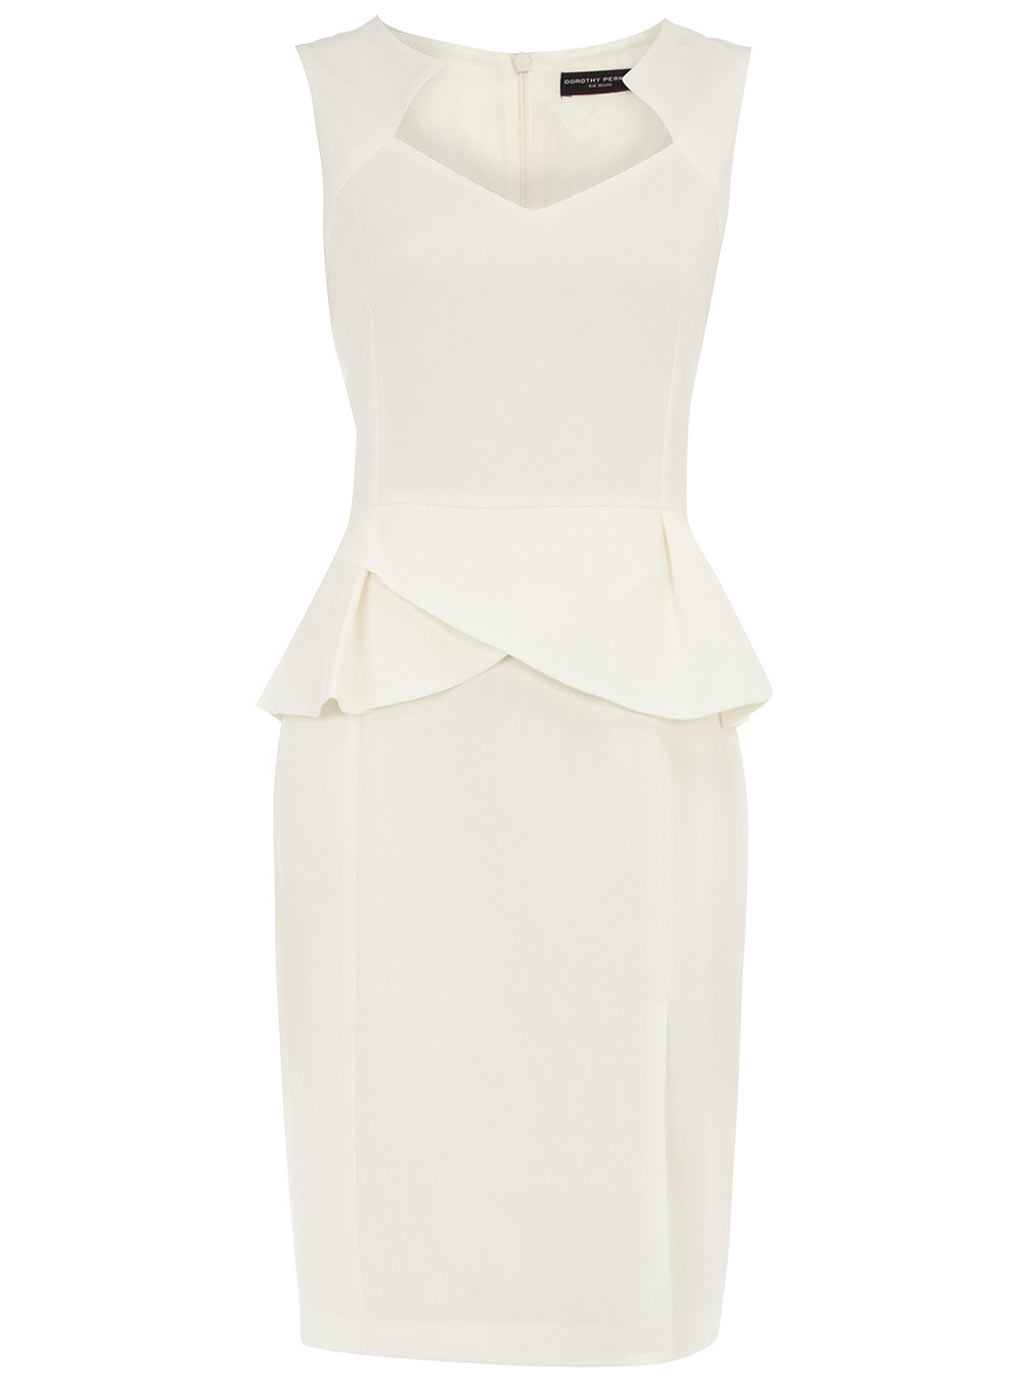 STYLISH LITTLE WHITE DRESSES FOR PLUS SIZES - Stylish Curves